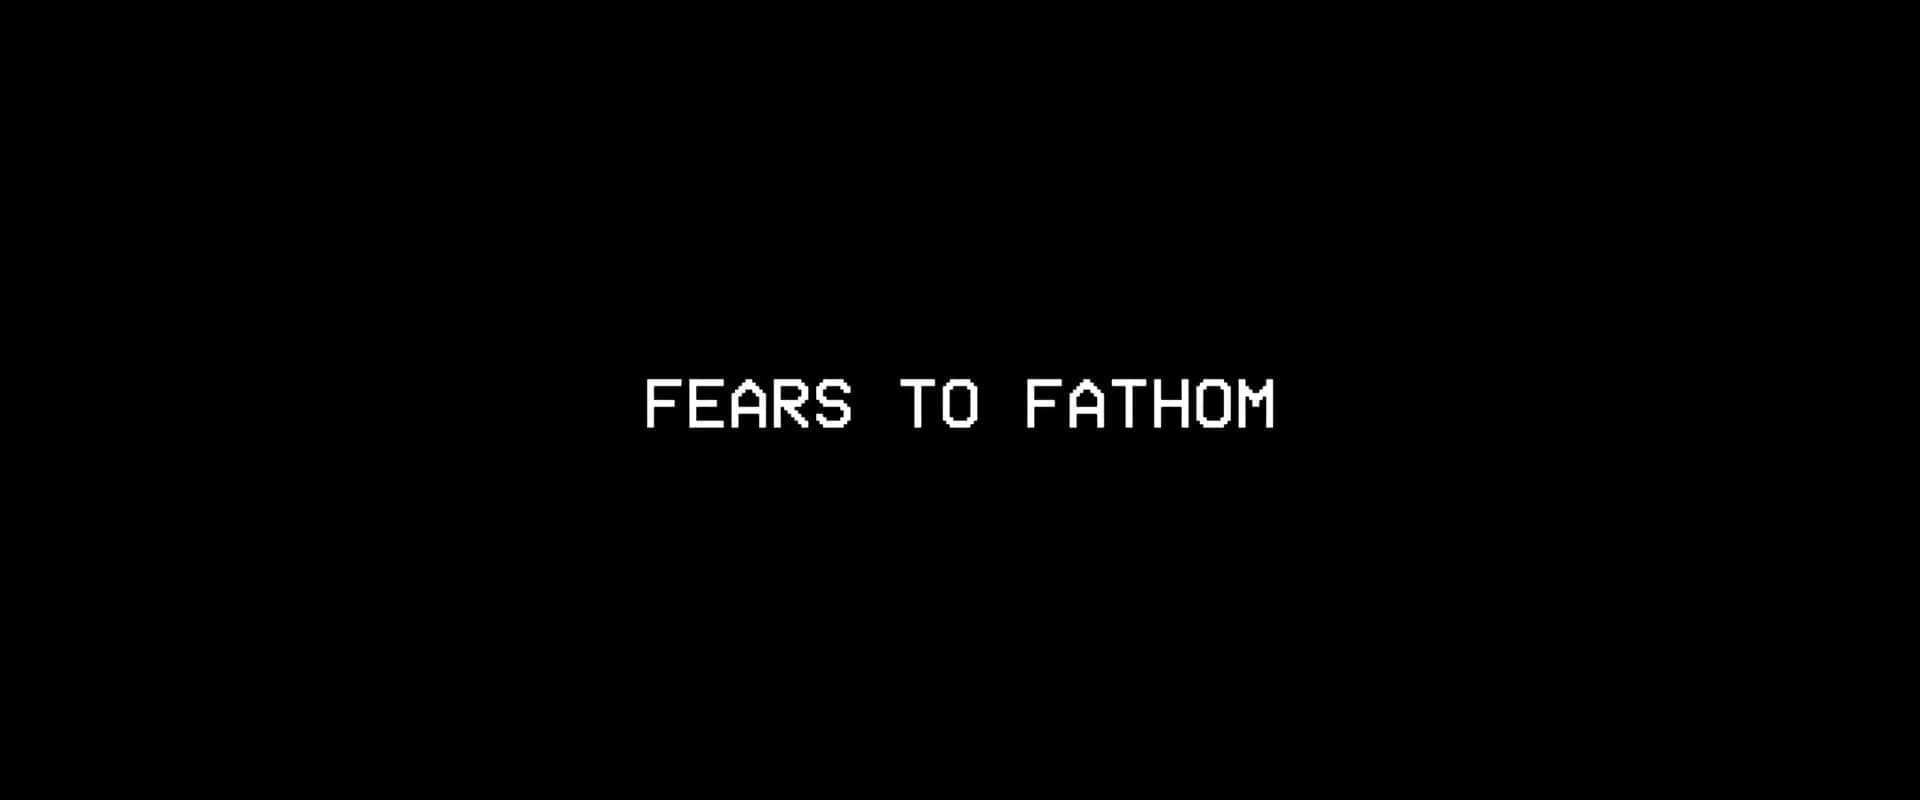 Fears to Fathom Home Alone